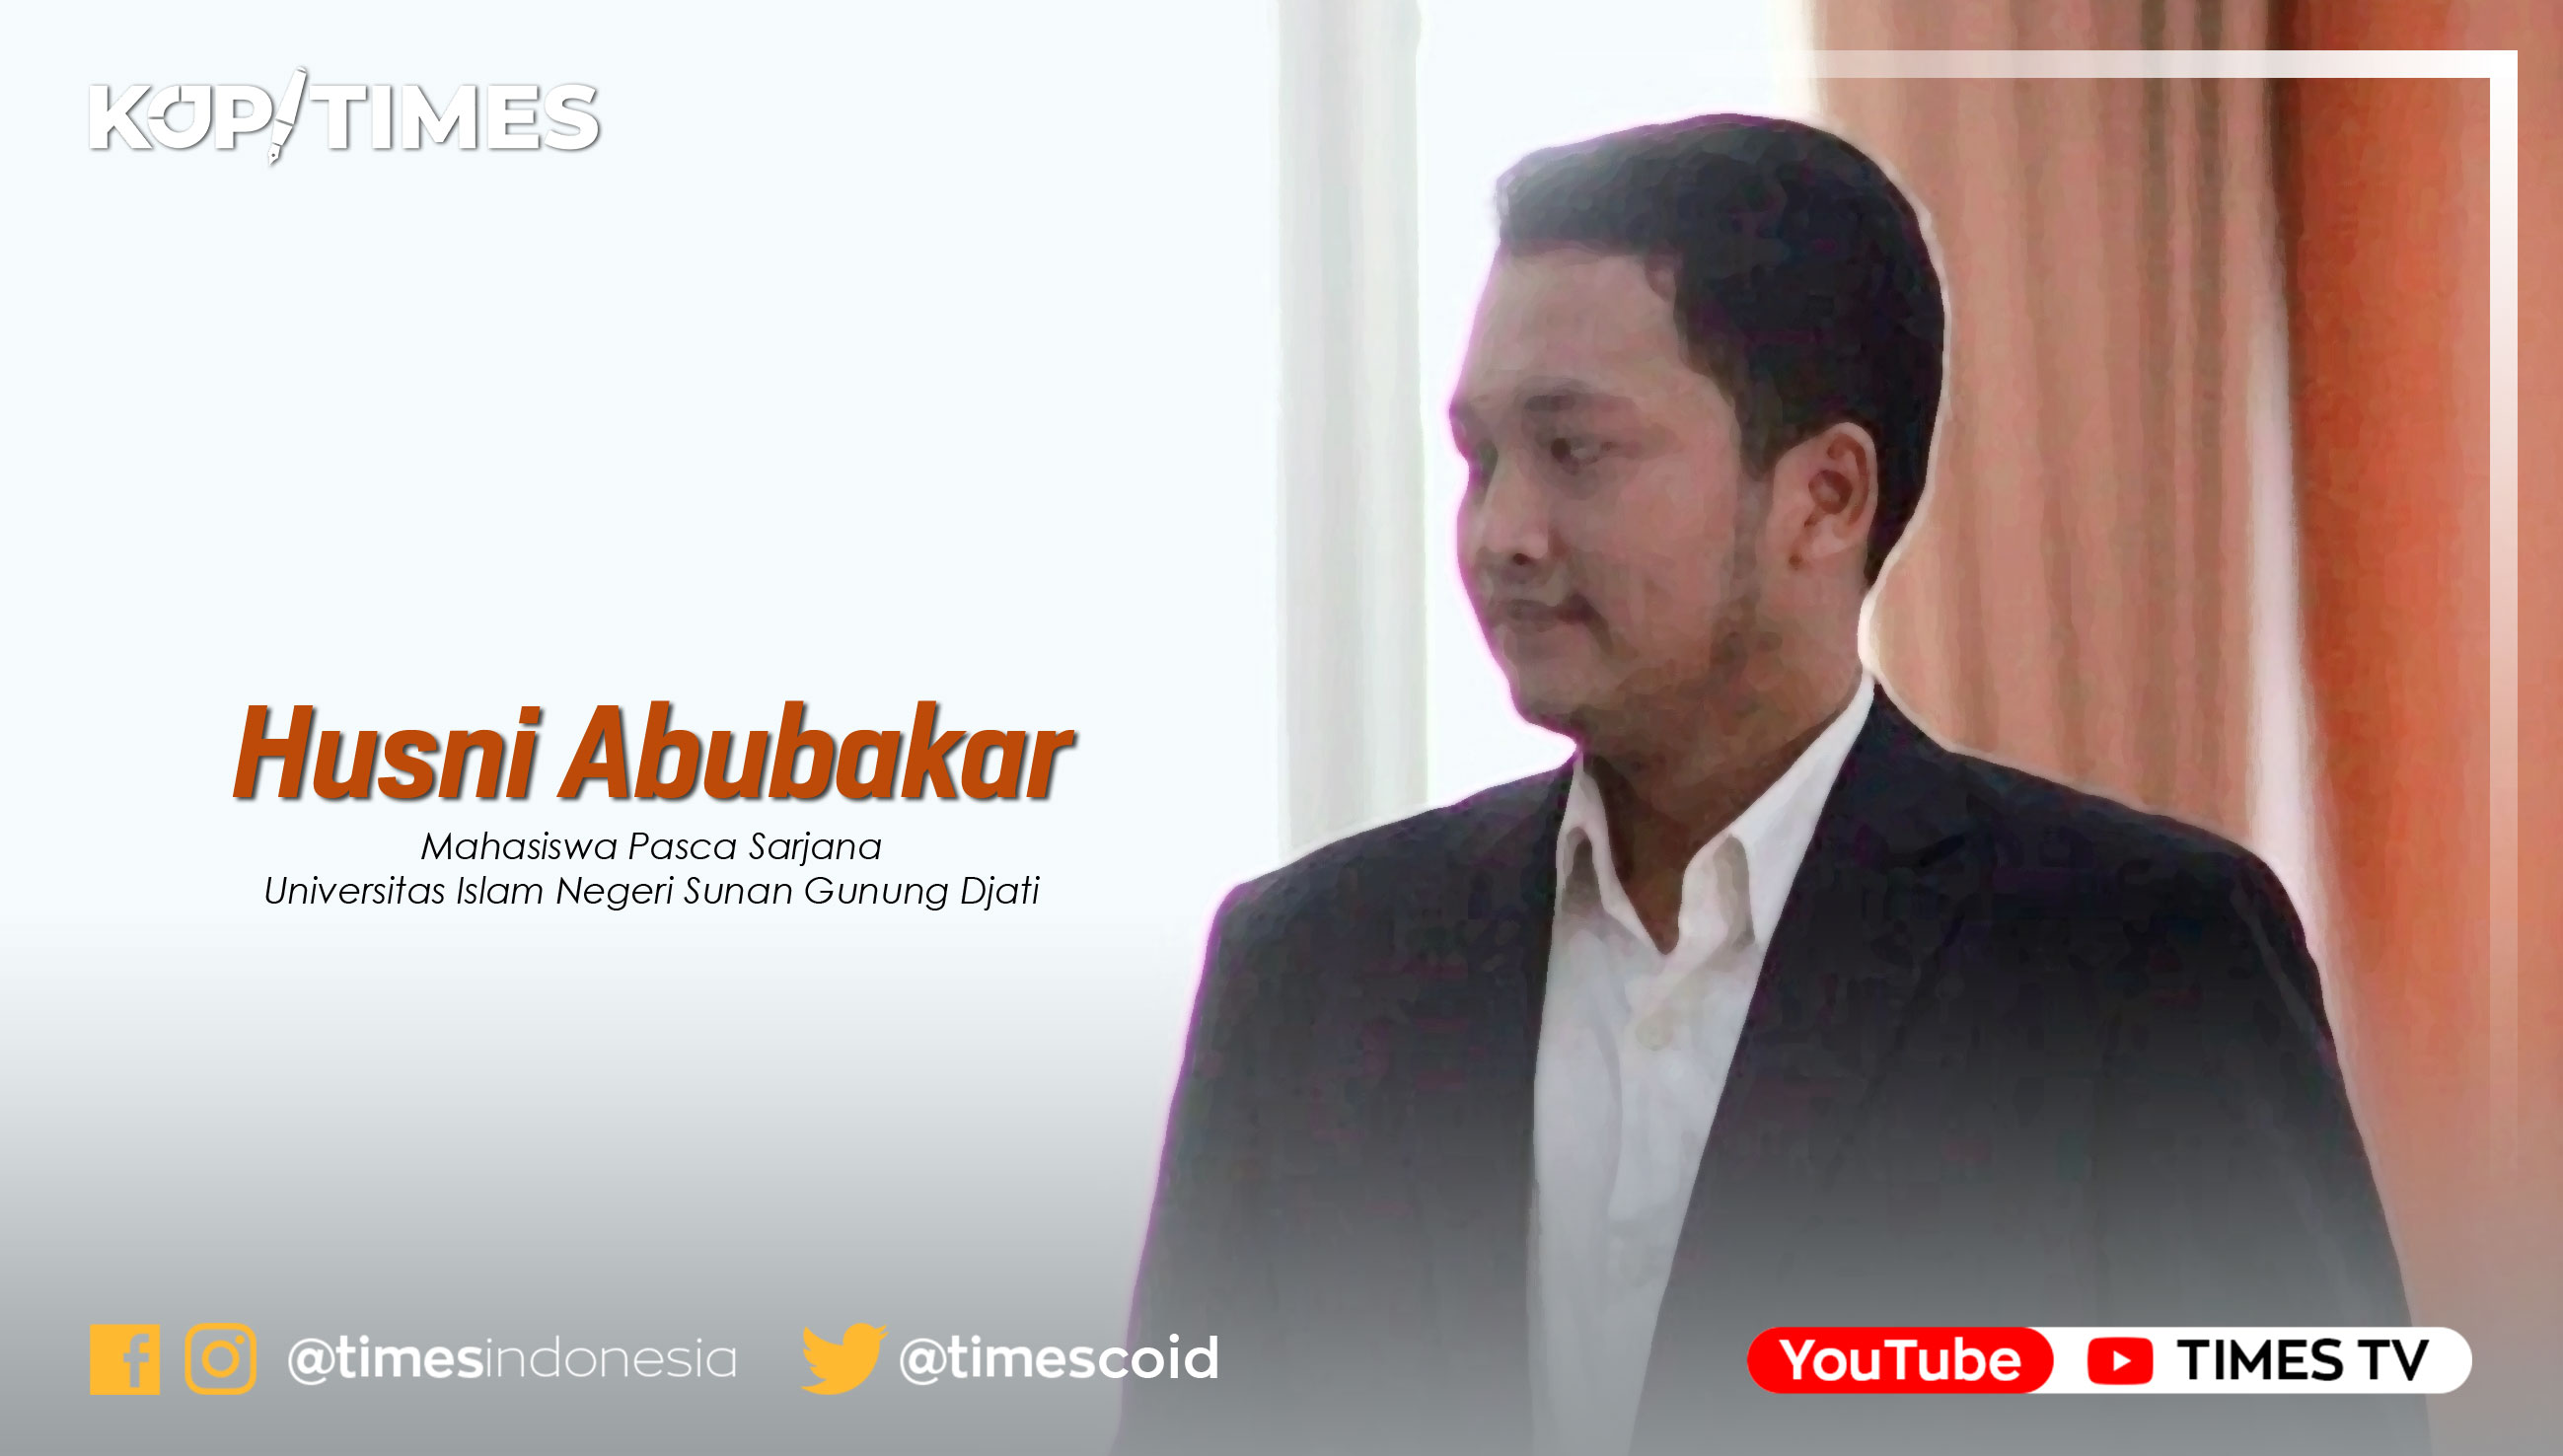 Husni Abubakar Mahasiswa Pascasarjana Magister Komunikasi dan Penyiaran Islam Universitas Islam Negeri Sunan Gunung Djati Bandung